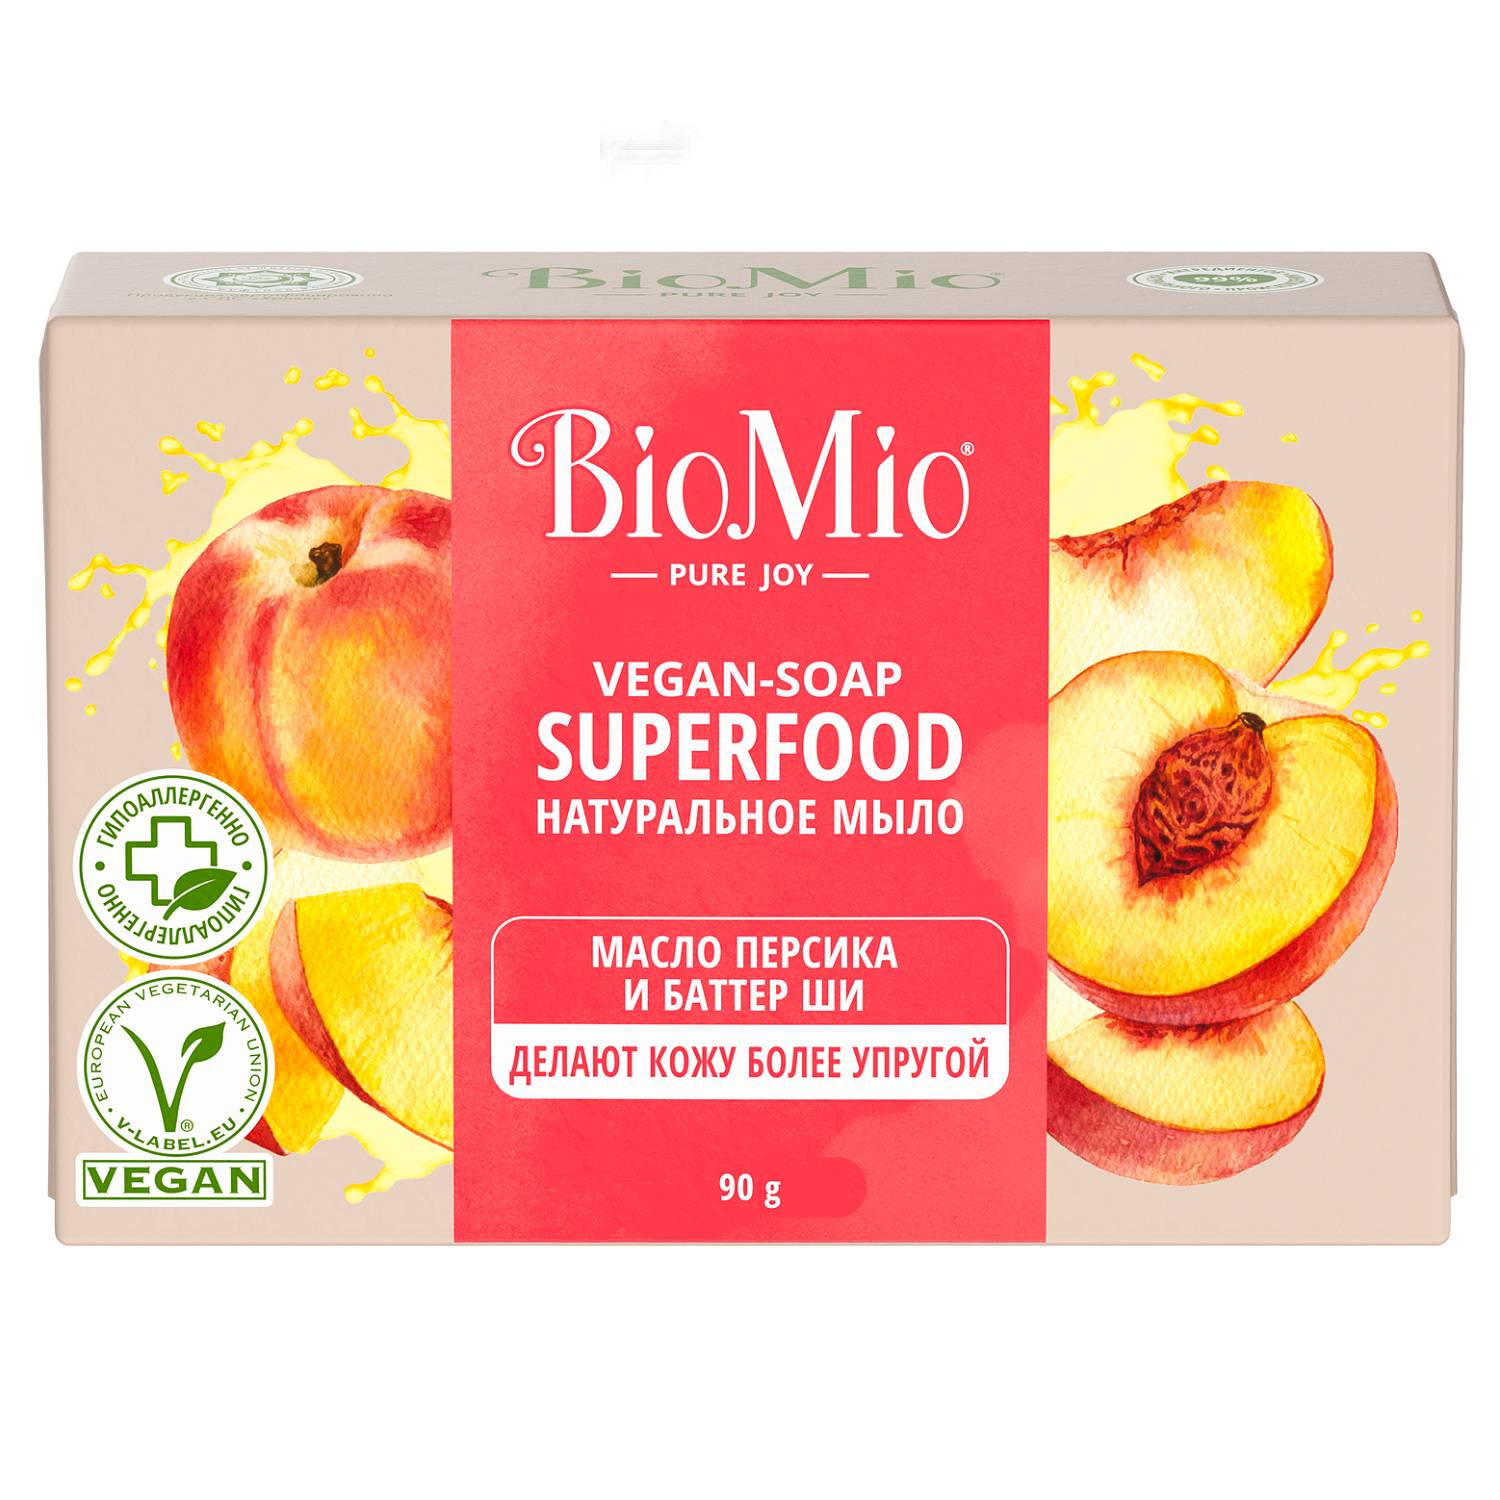 BioMio Натуральное мыло Персик и ши Vegan Soap Superfood, 90 г (BioMio, Мыло) цена и фото